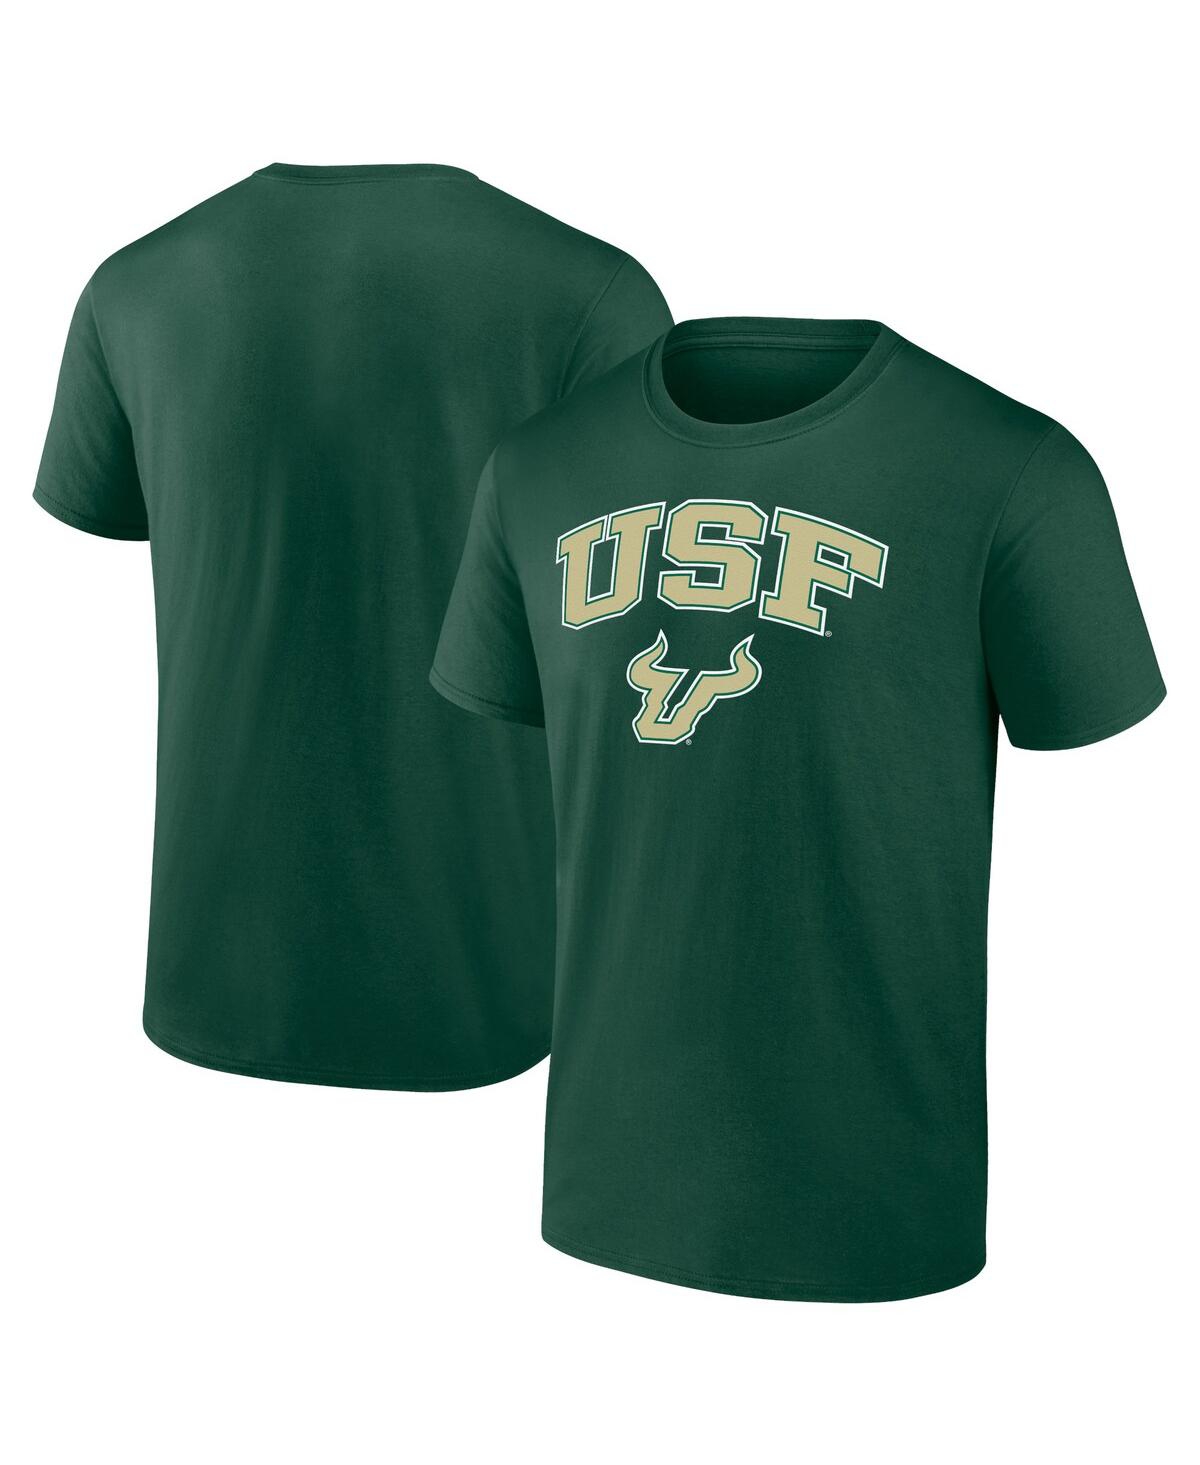 Shop Fanatics Men's  Green South Florida Bulls Campus T-shirt